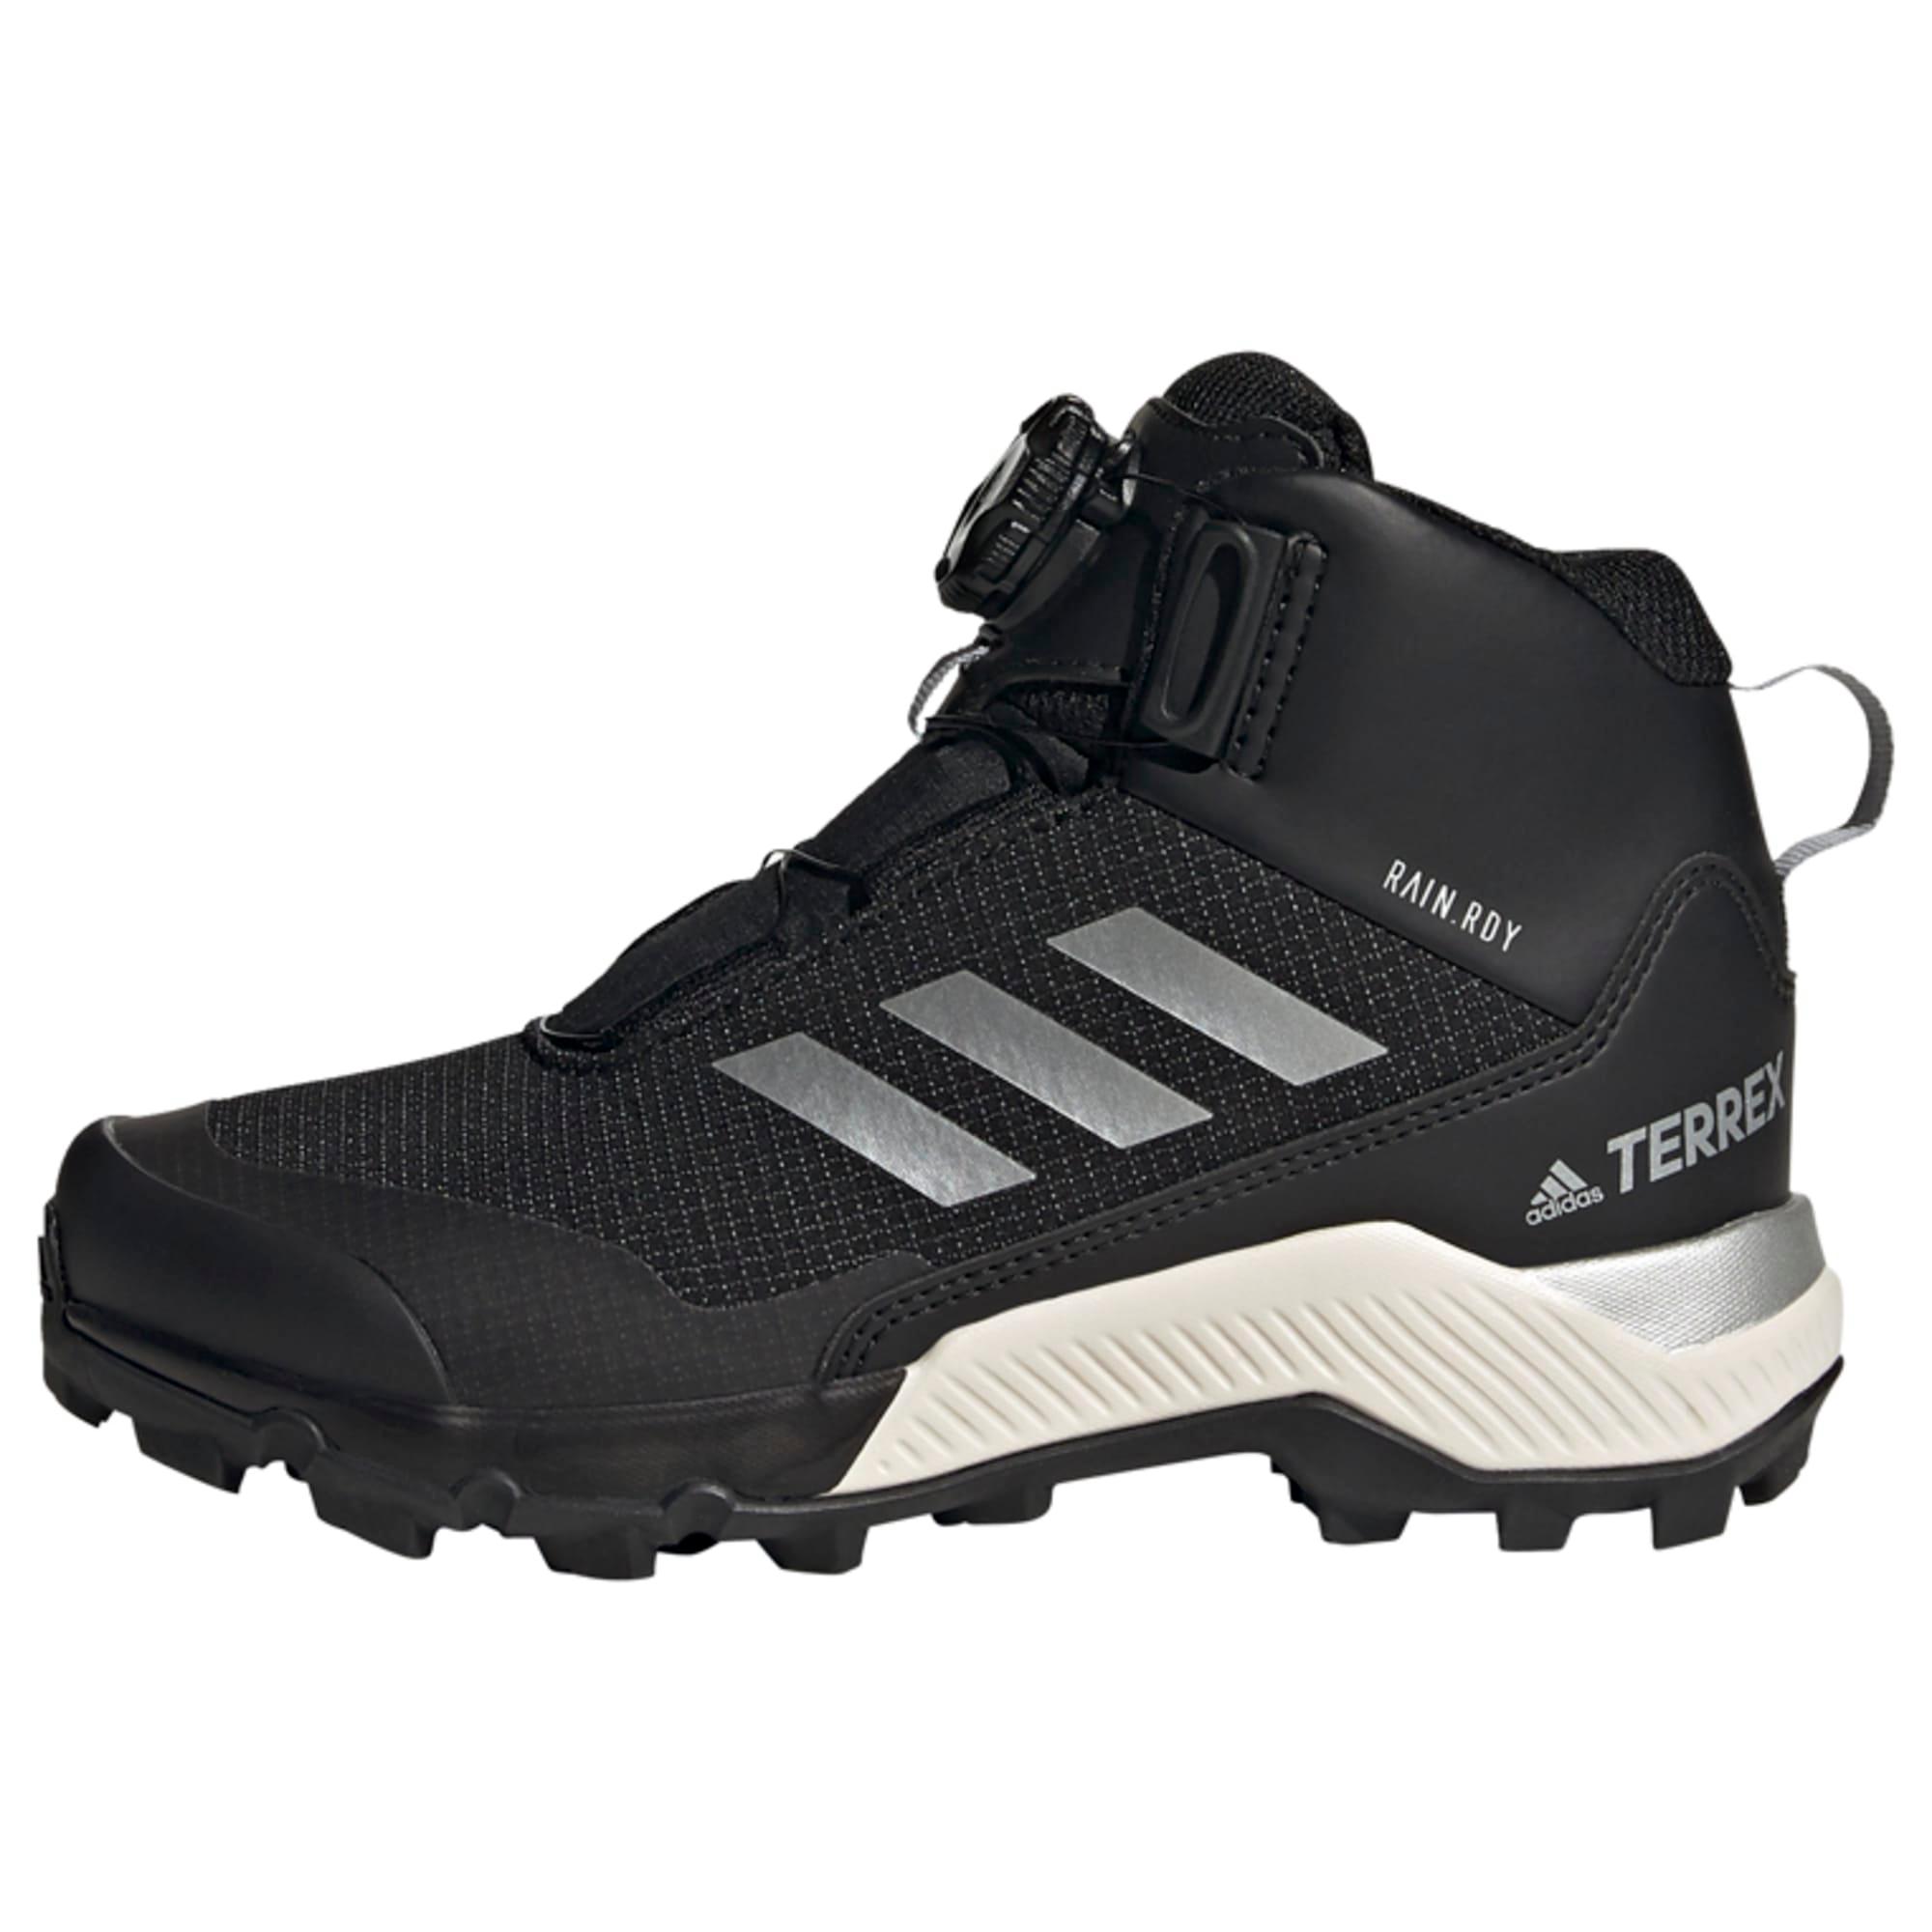 Adidas Winter Mid Boa Kinder Core Black / Silver Metallic / Core Black im Online Shop von SportScheck kaufen